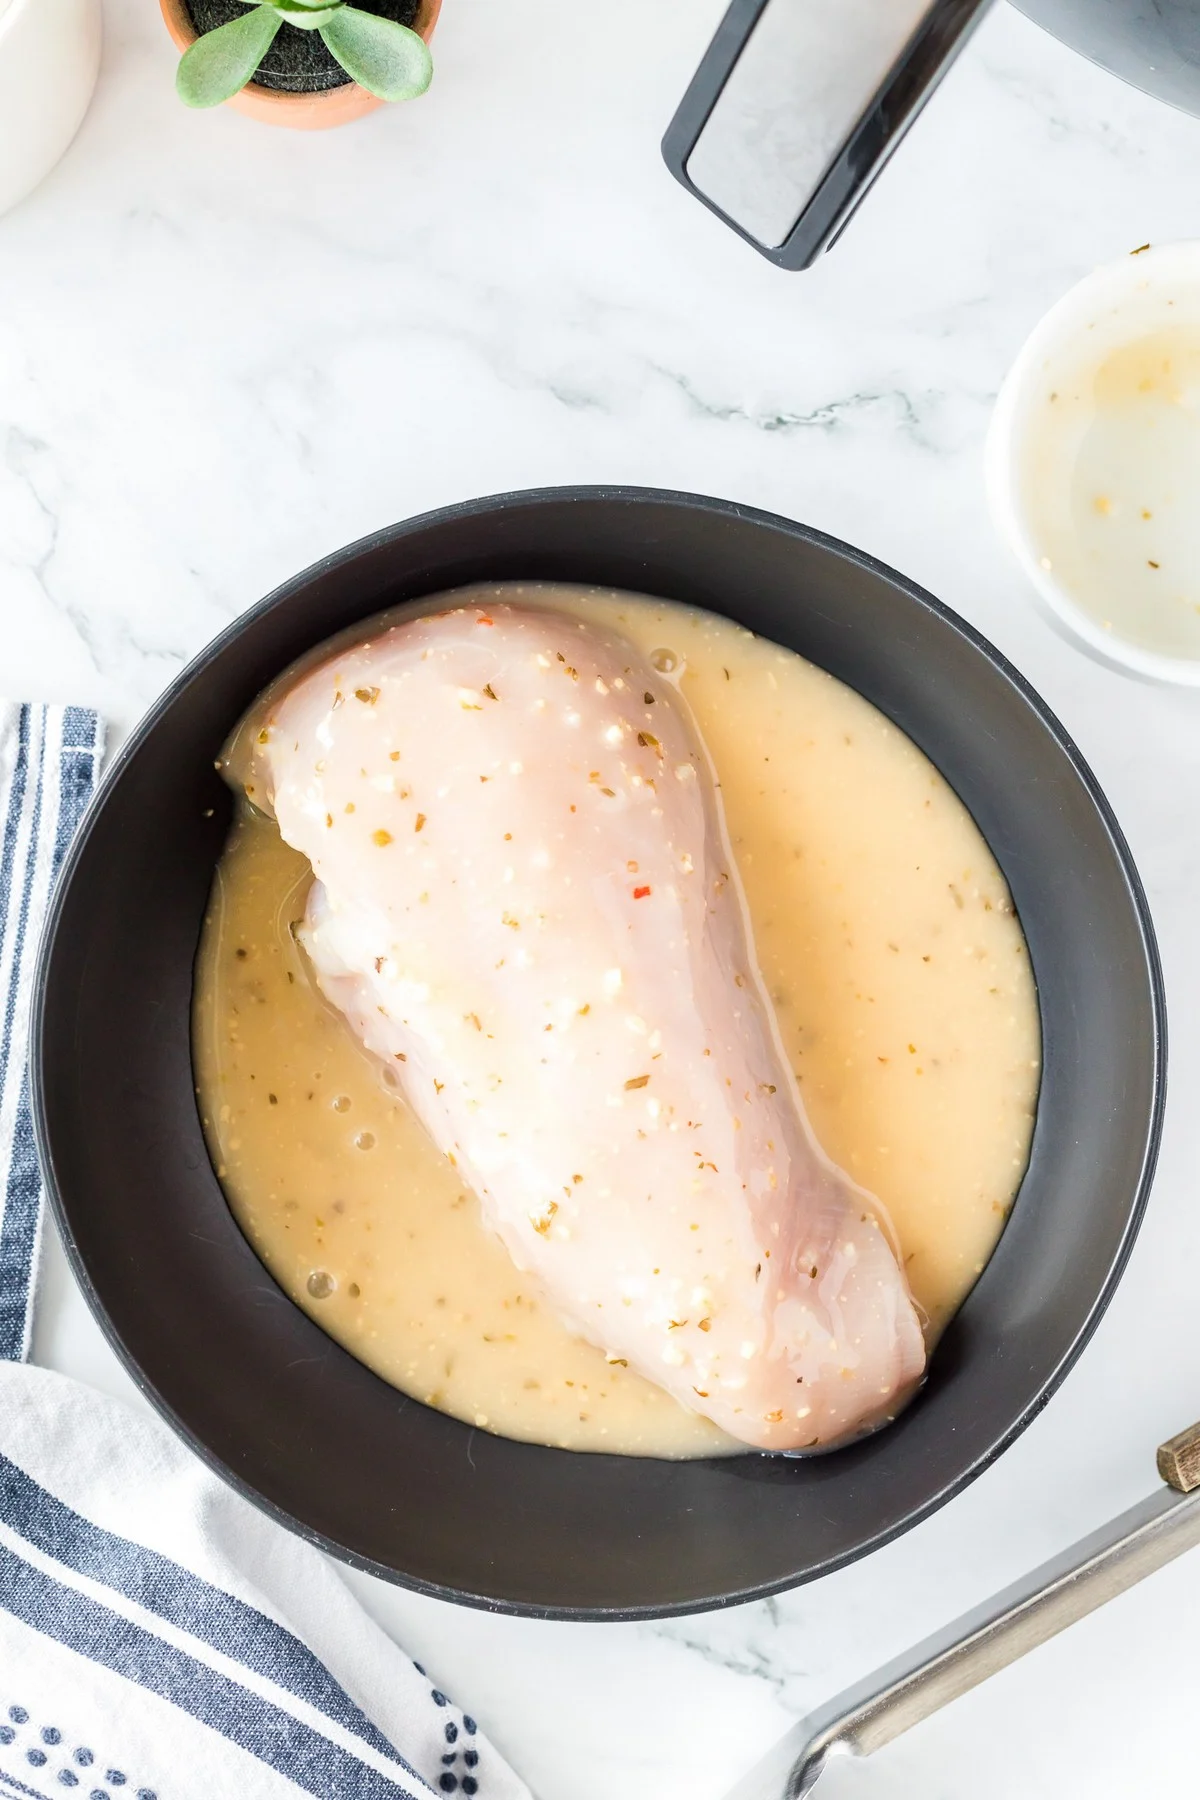 marinating boneless skinless chicken breast